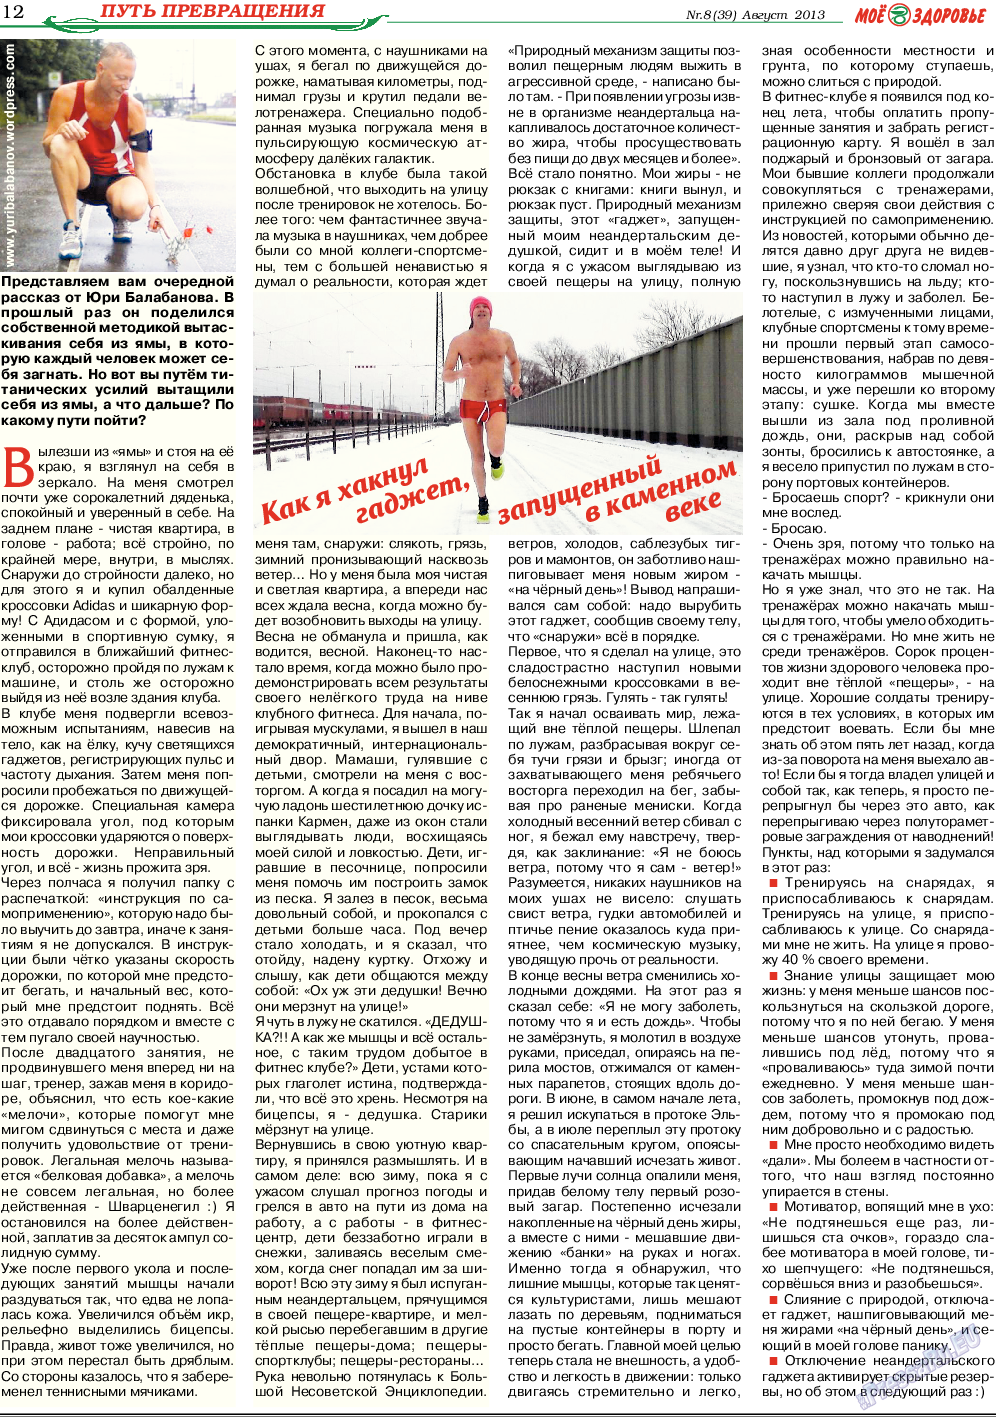 Кругозор, газета. 2013 №8 стр.12